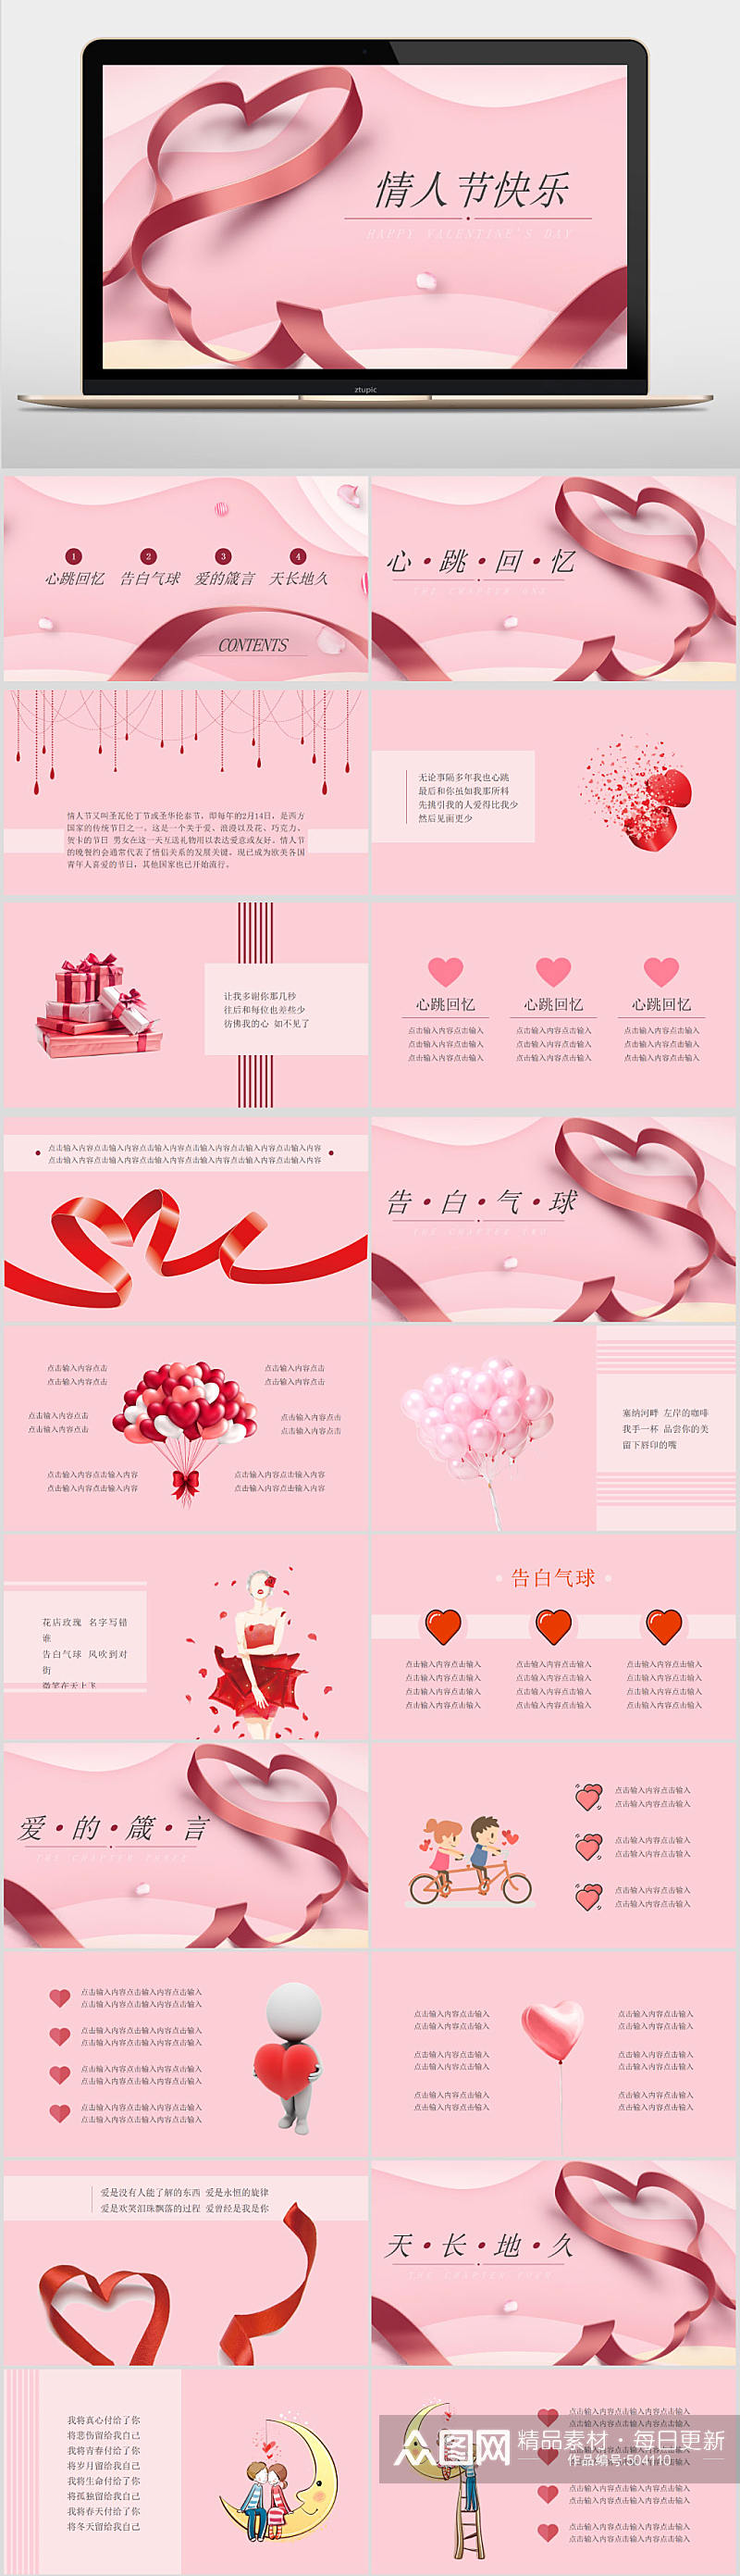 粉色浪漫风情人节主题PPT模板素材